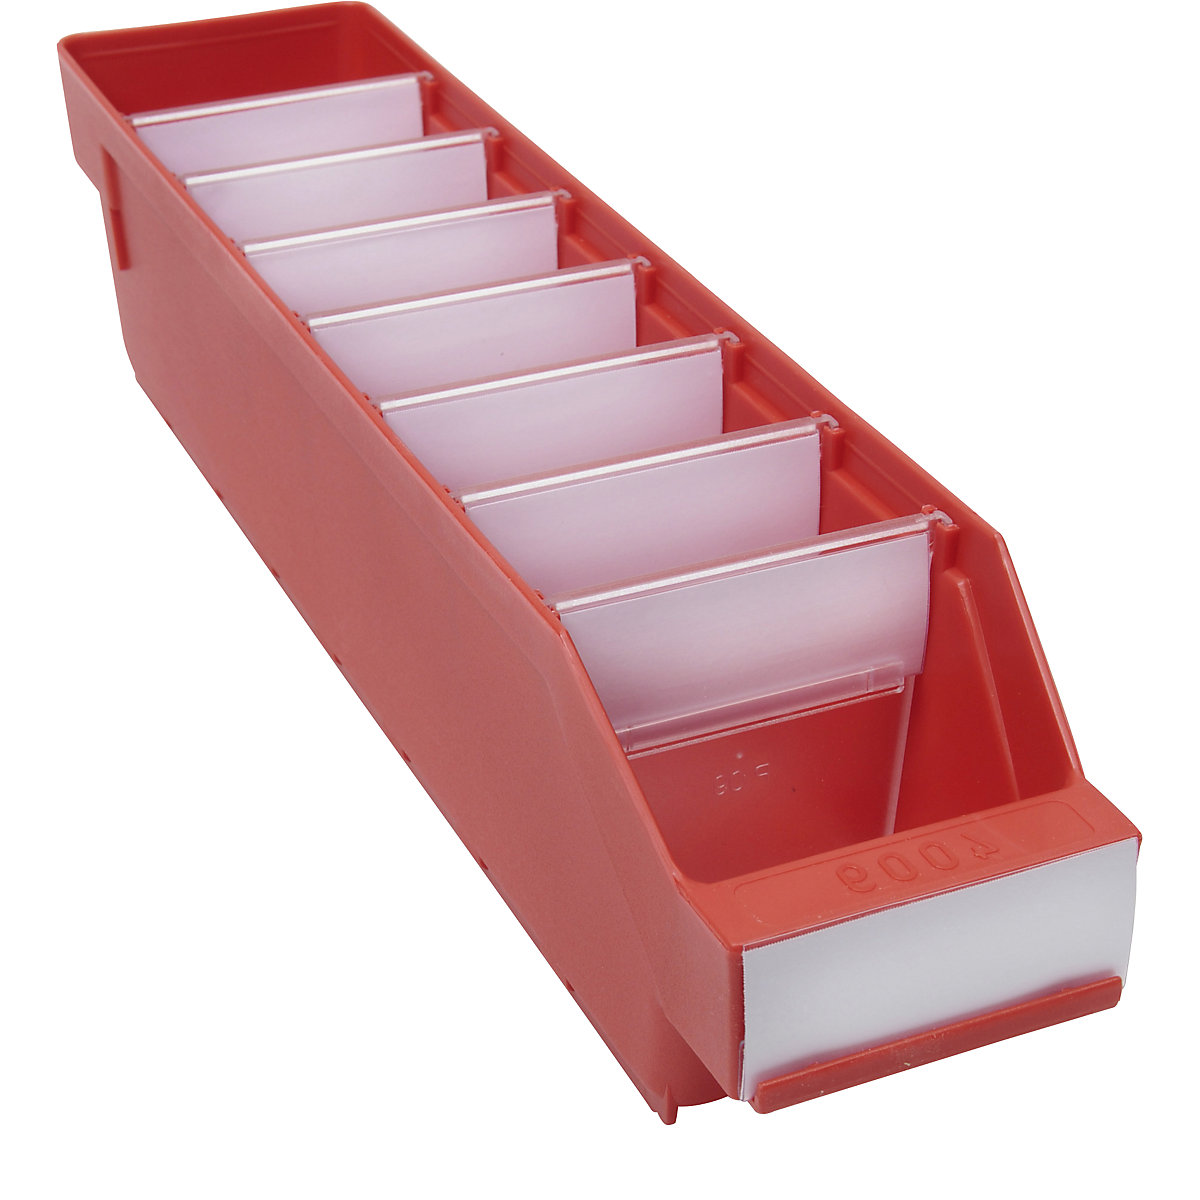 Regalkasten aus hochschlagfestem Polypropylen STEMO, rot, LxBxH 400 x 90 x 95 mm, VE 40 Stk-16